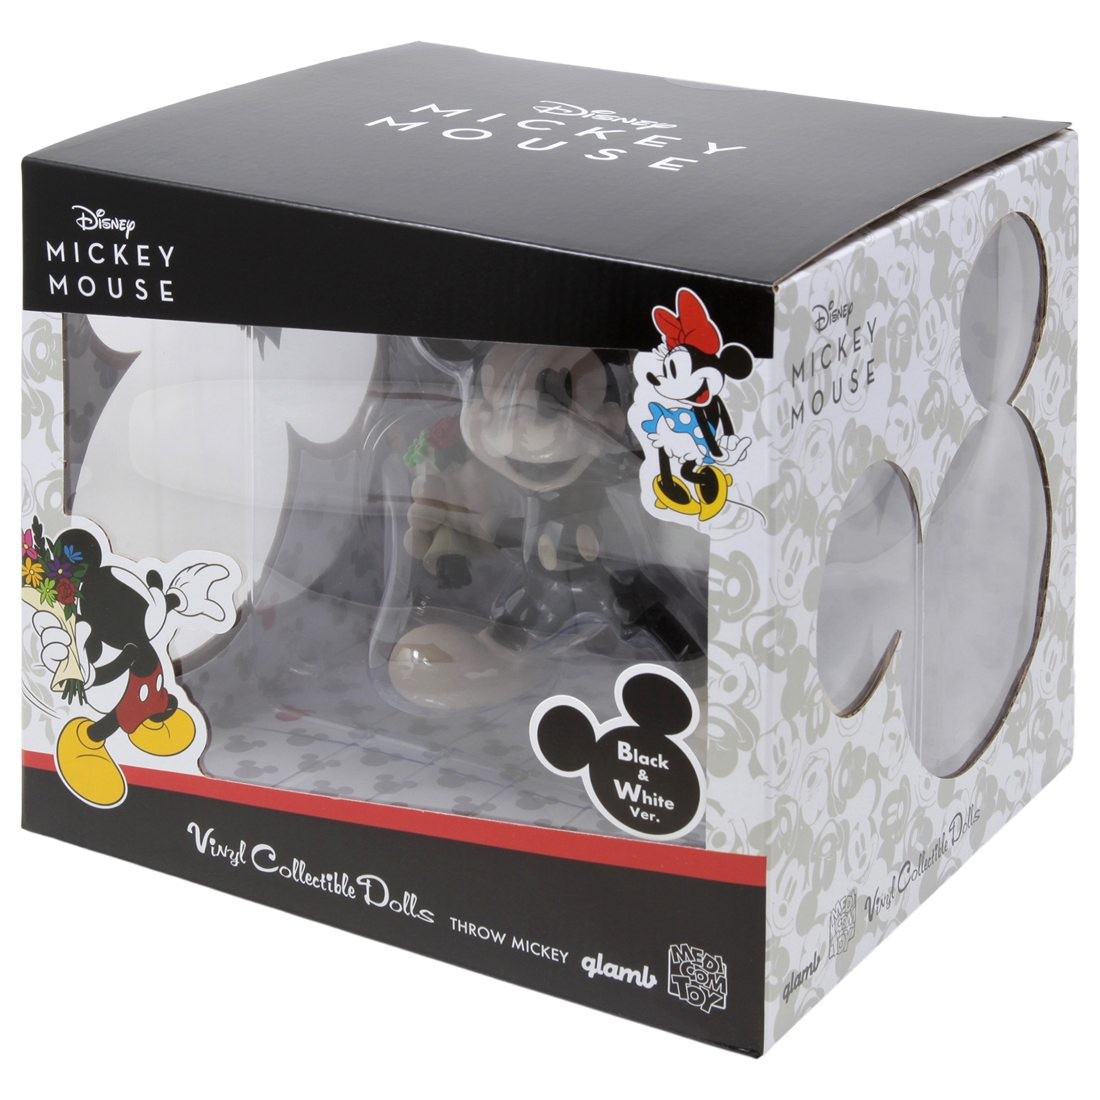 【新品未開封】glamb VCD THROW MICKEY ミッキーマウス